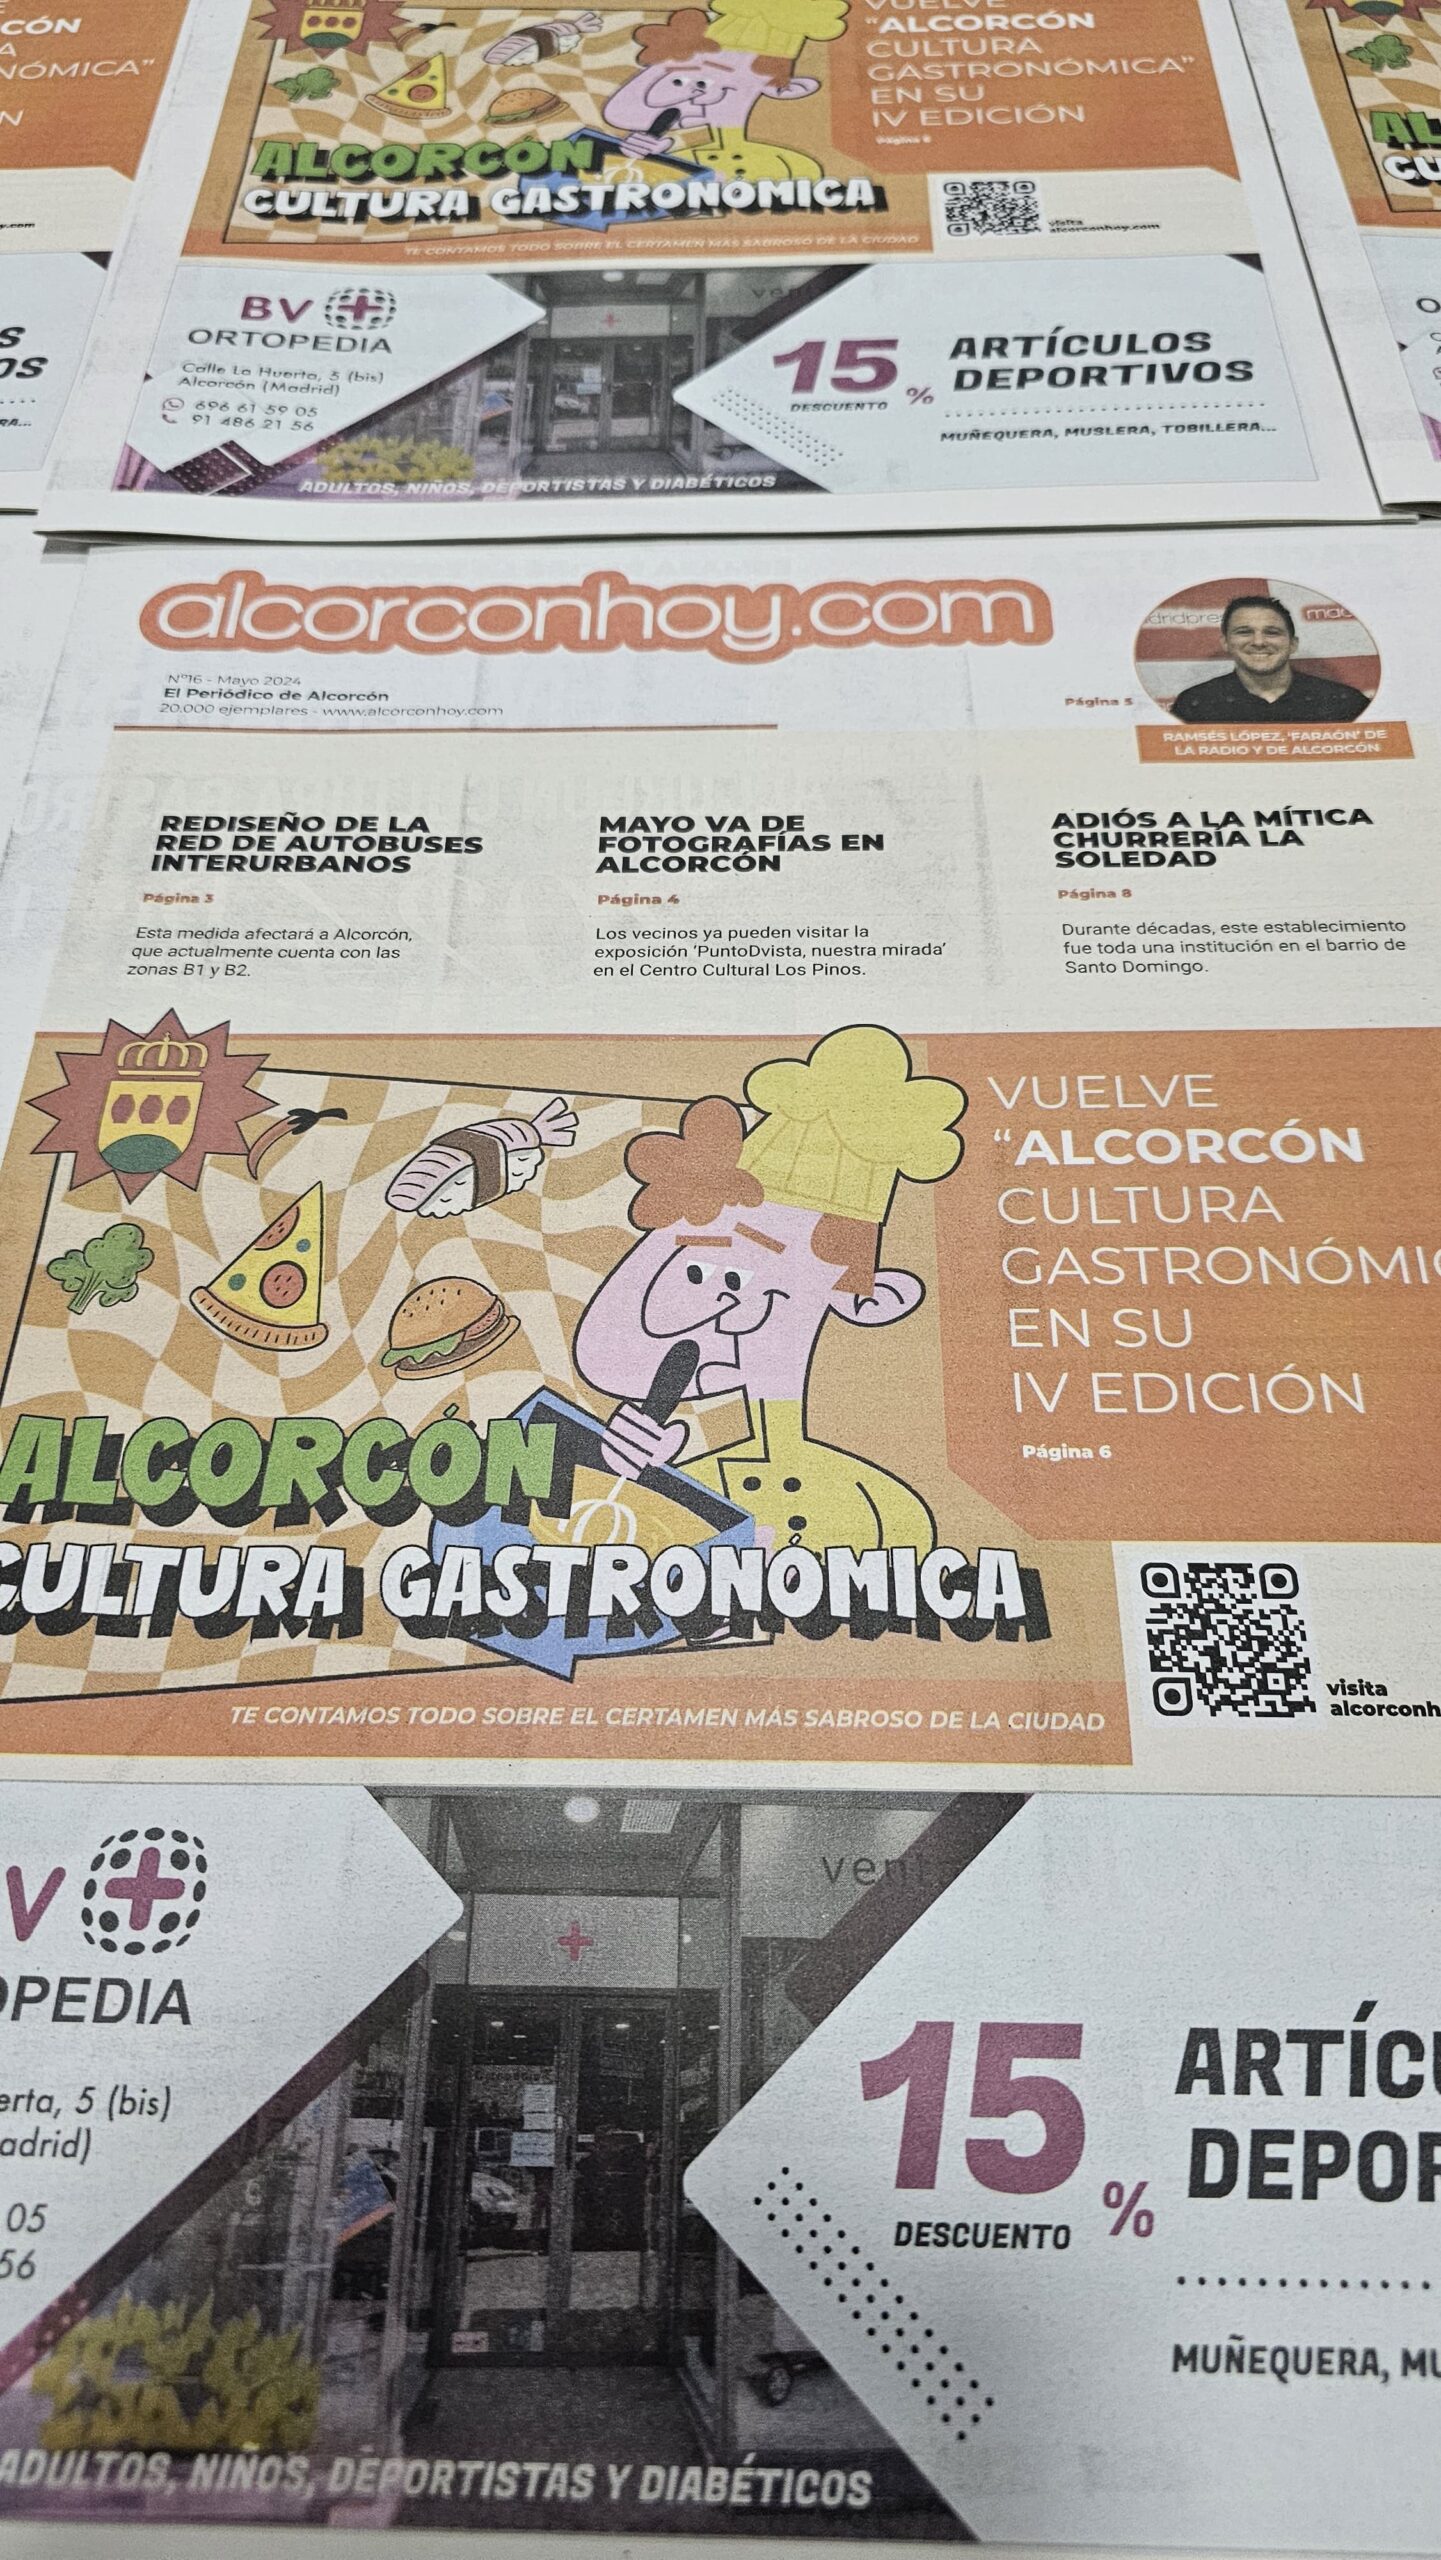 Los vecinos de Alcorcón ya pueden leer la edición de mayo del periódico de alcorconhoy.com